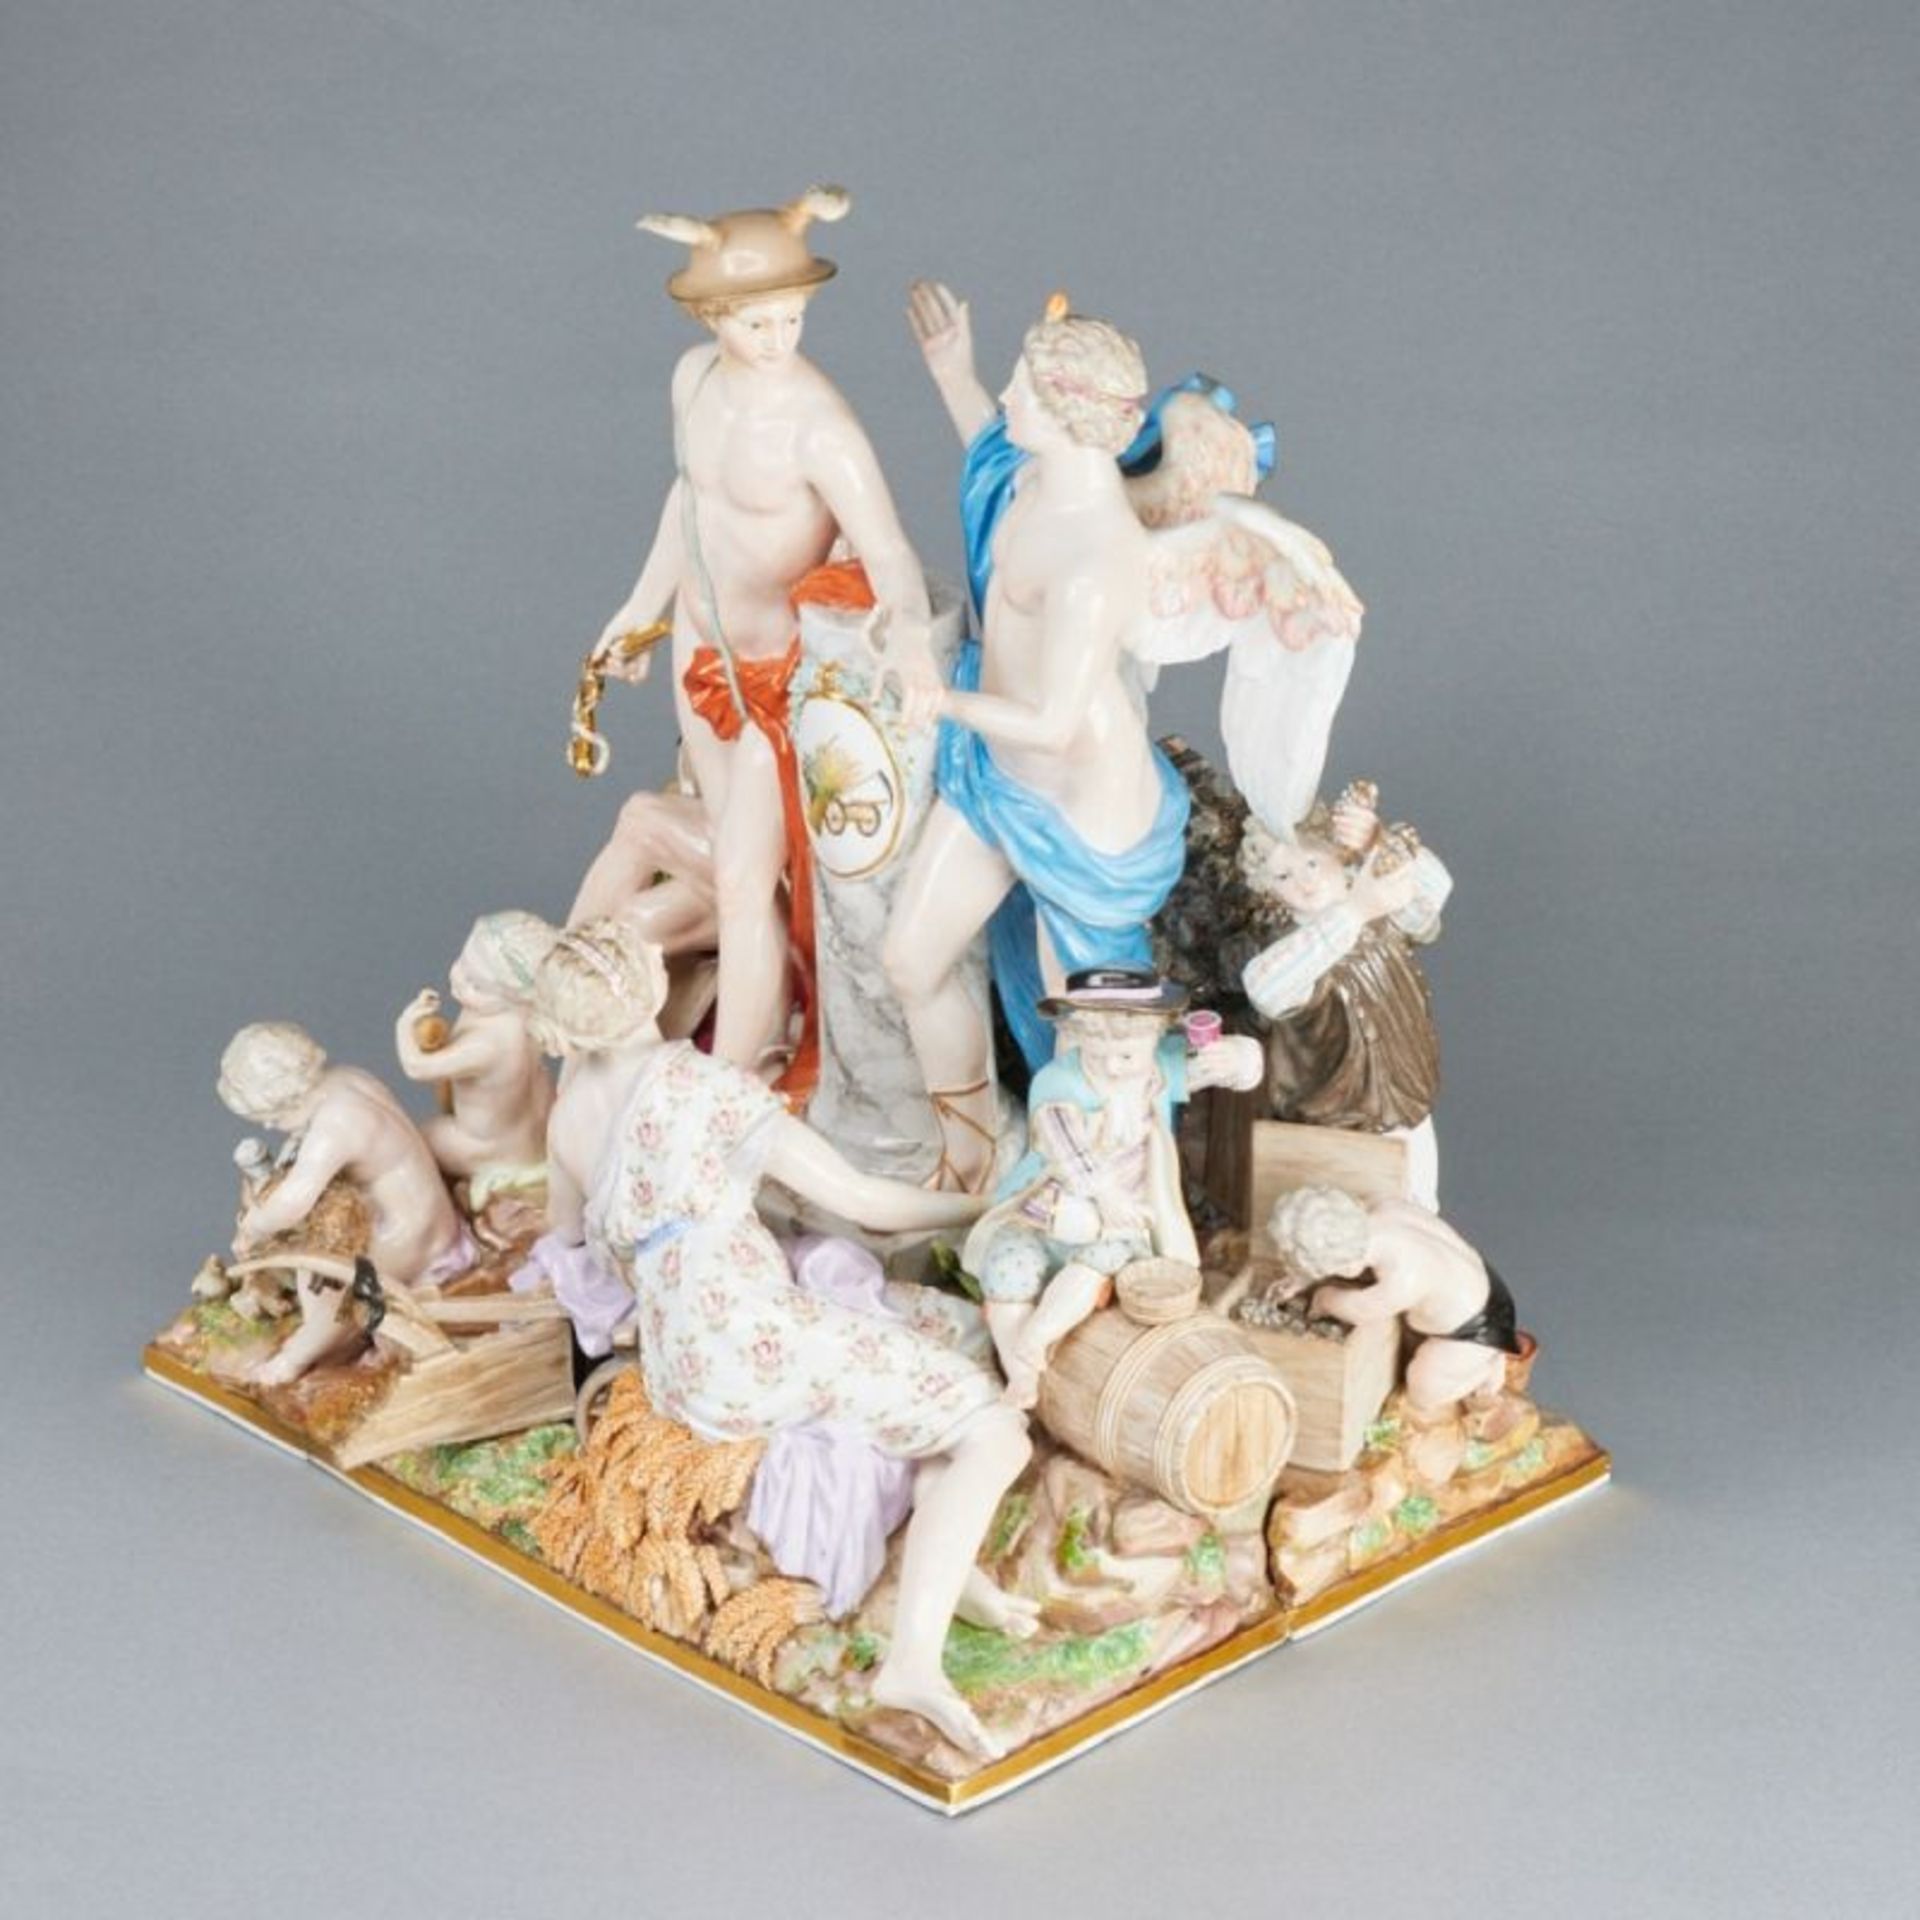 Außergewöhnliche Figurengruppe als Allegorie - Der Handel. Meissen um 1850. - Image 2 of 4